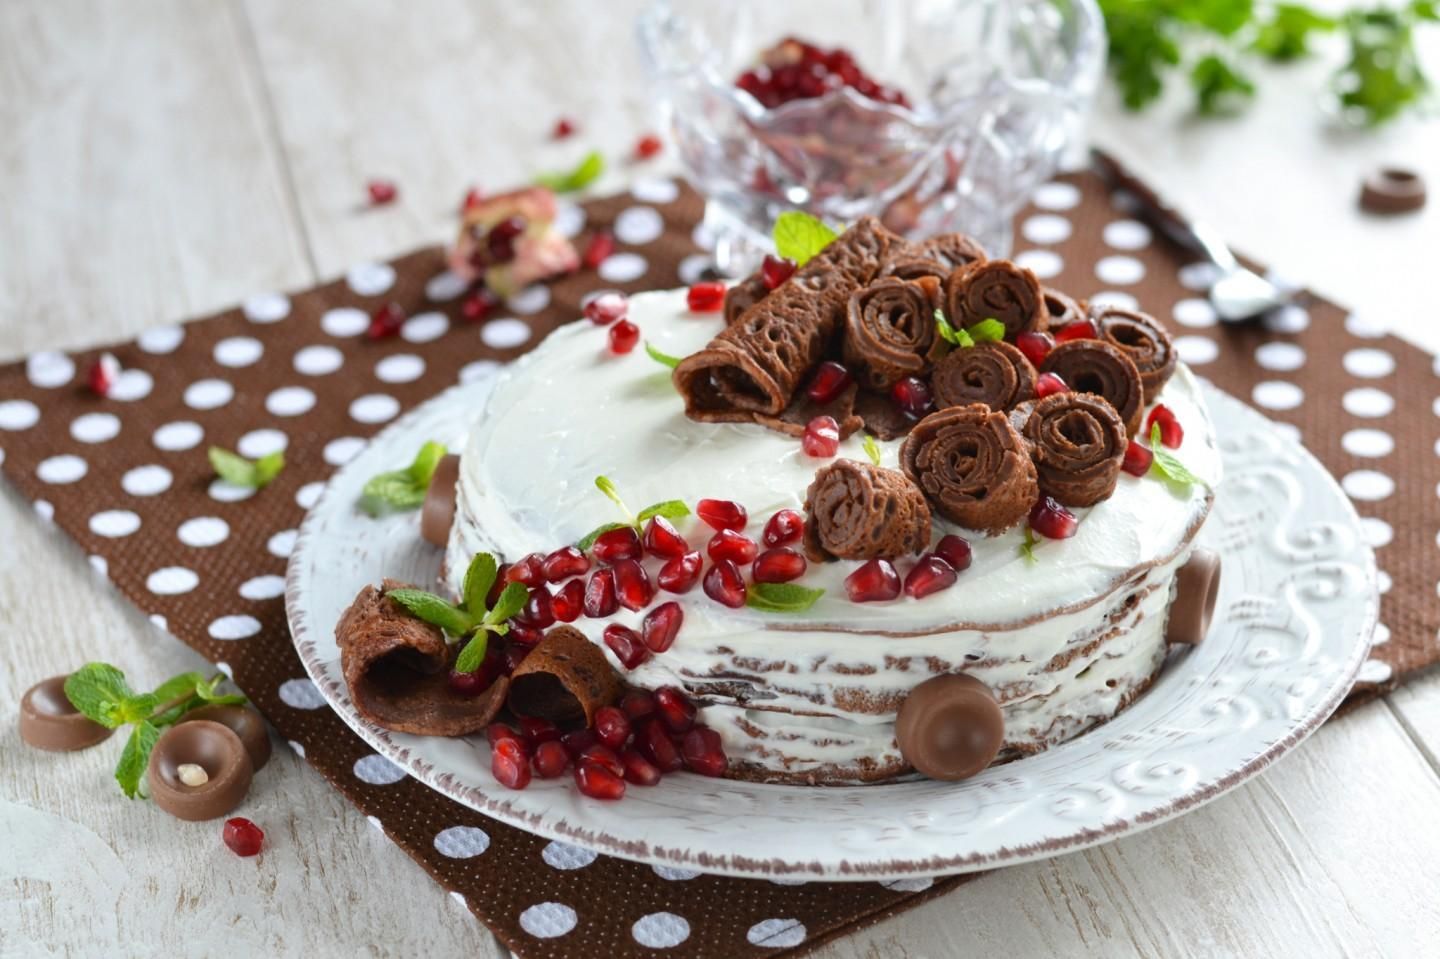 Шоколадный торт из блинчиков  – рецепт на Масленицу 2021